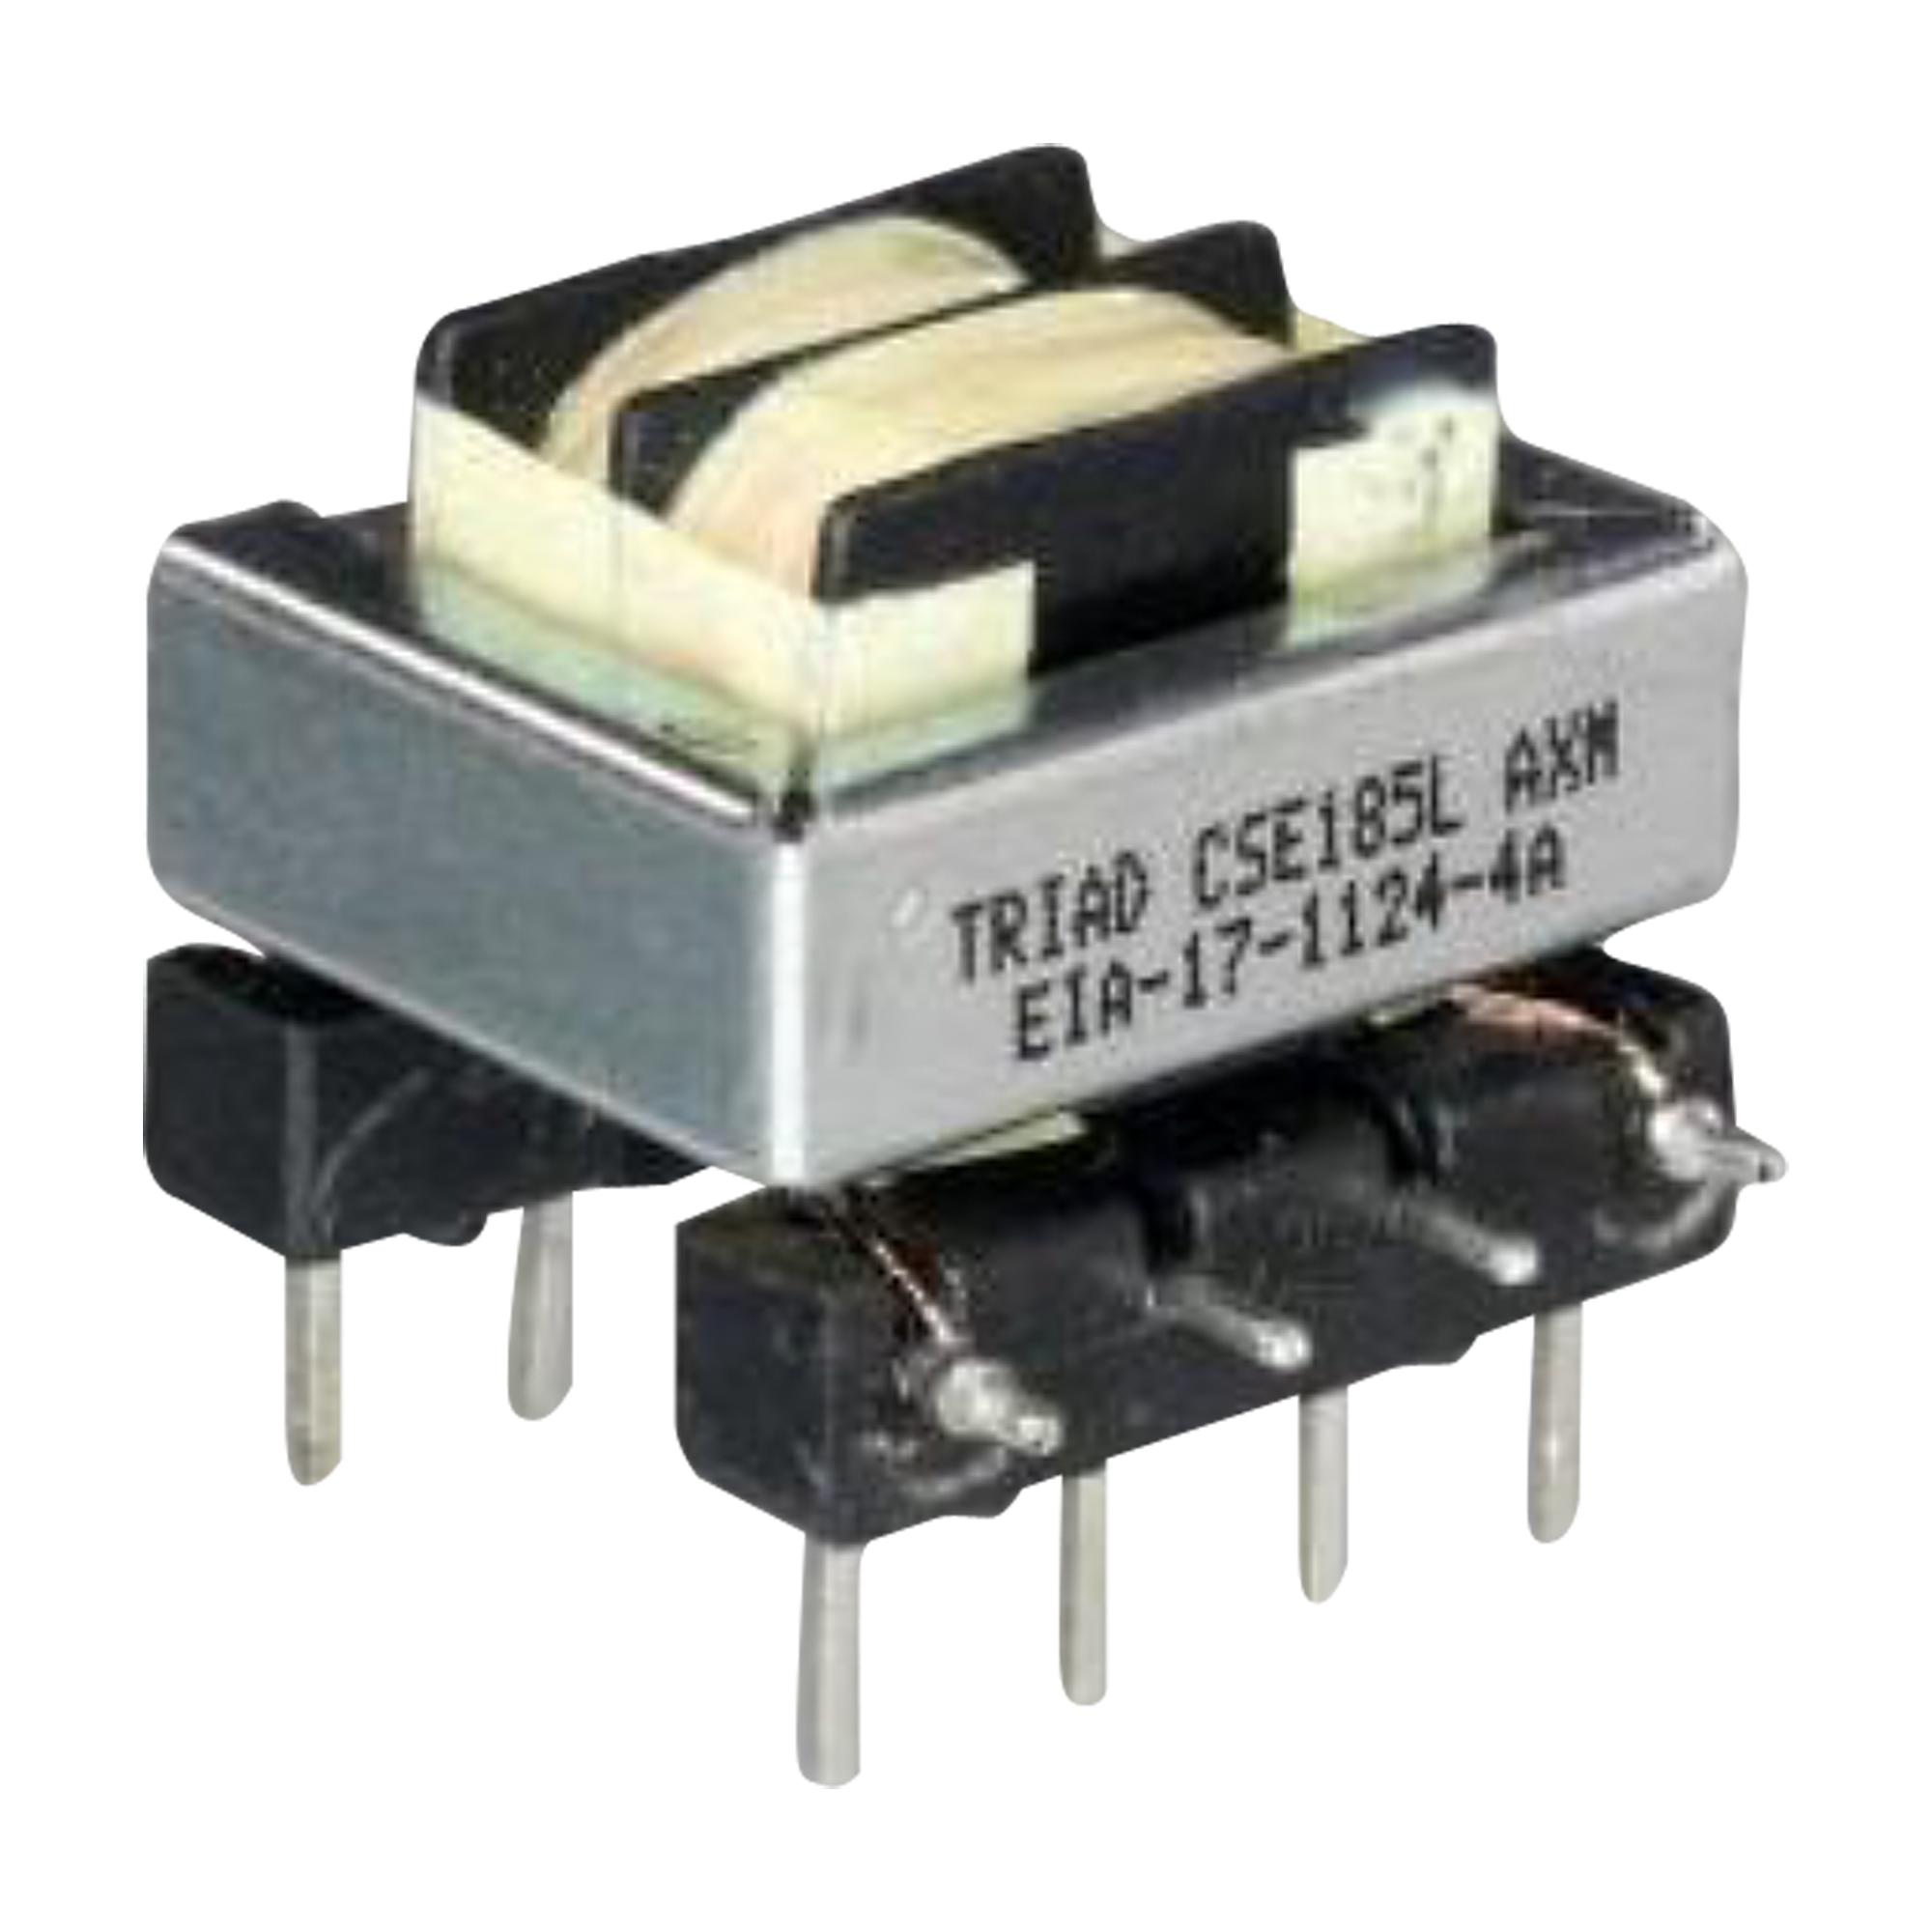 Triad Magnetics Cse185L Current Sens Transformer, 3A, Tht